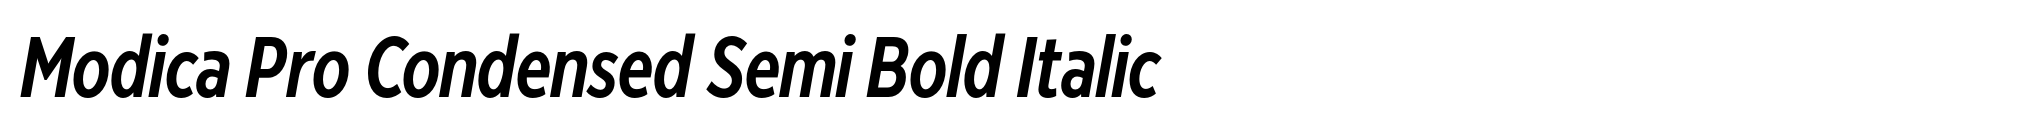 Modica Pro Condensed Semi Bold Italic image